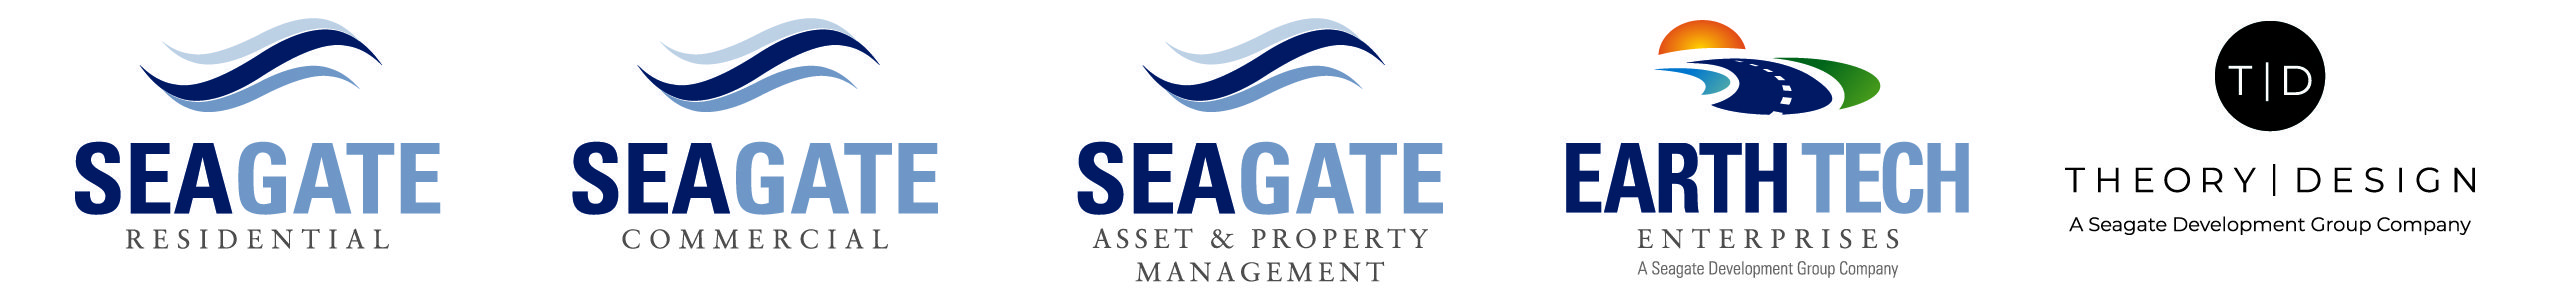 Seagate Brands Logo Lockup